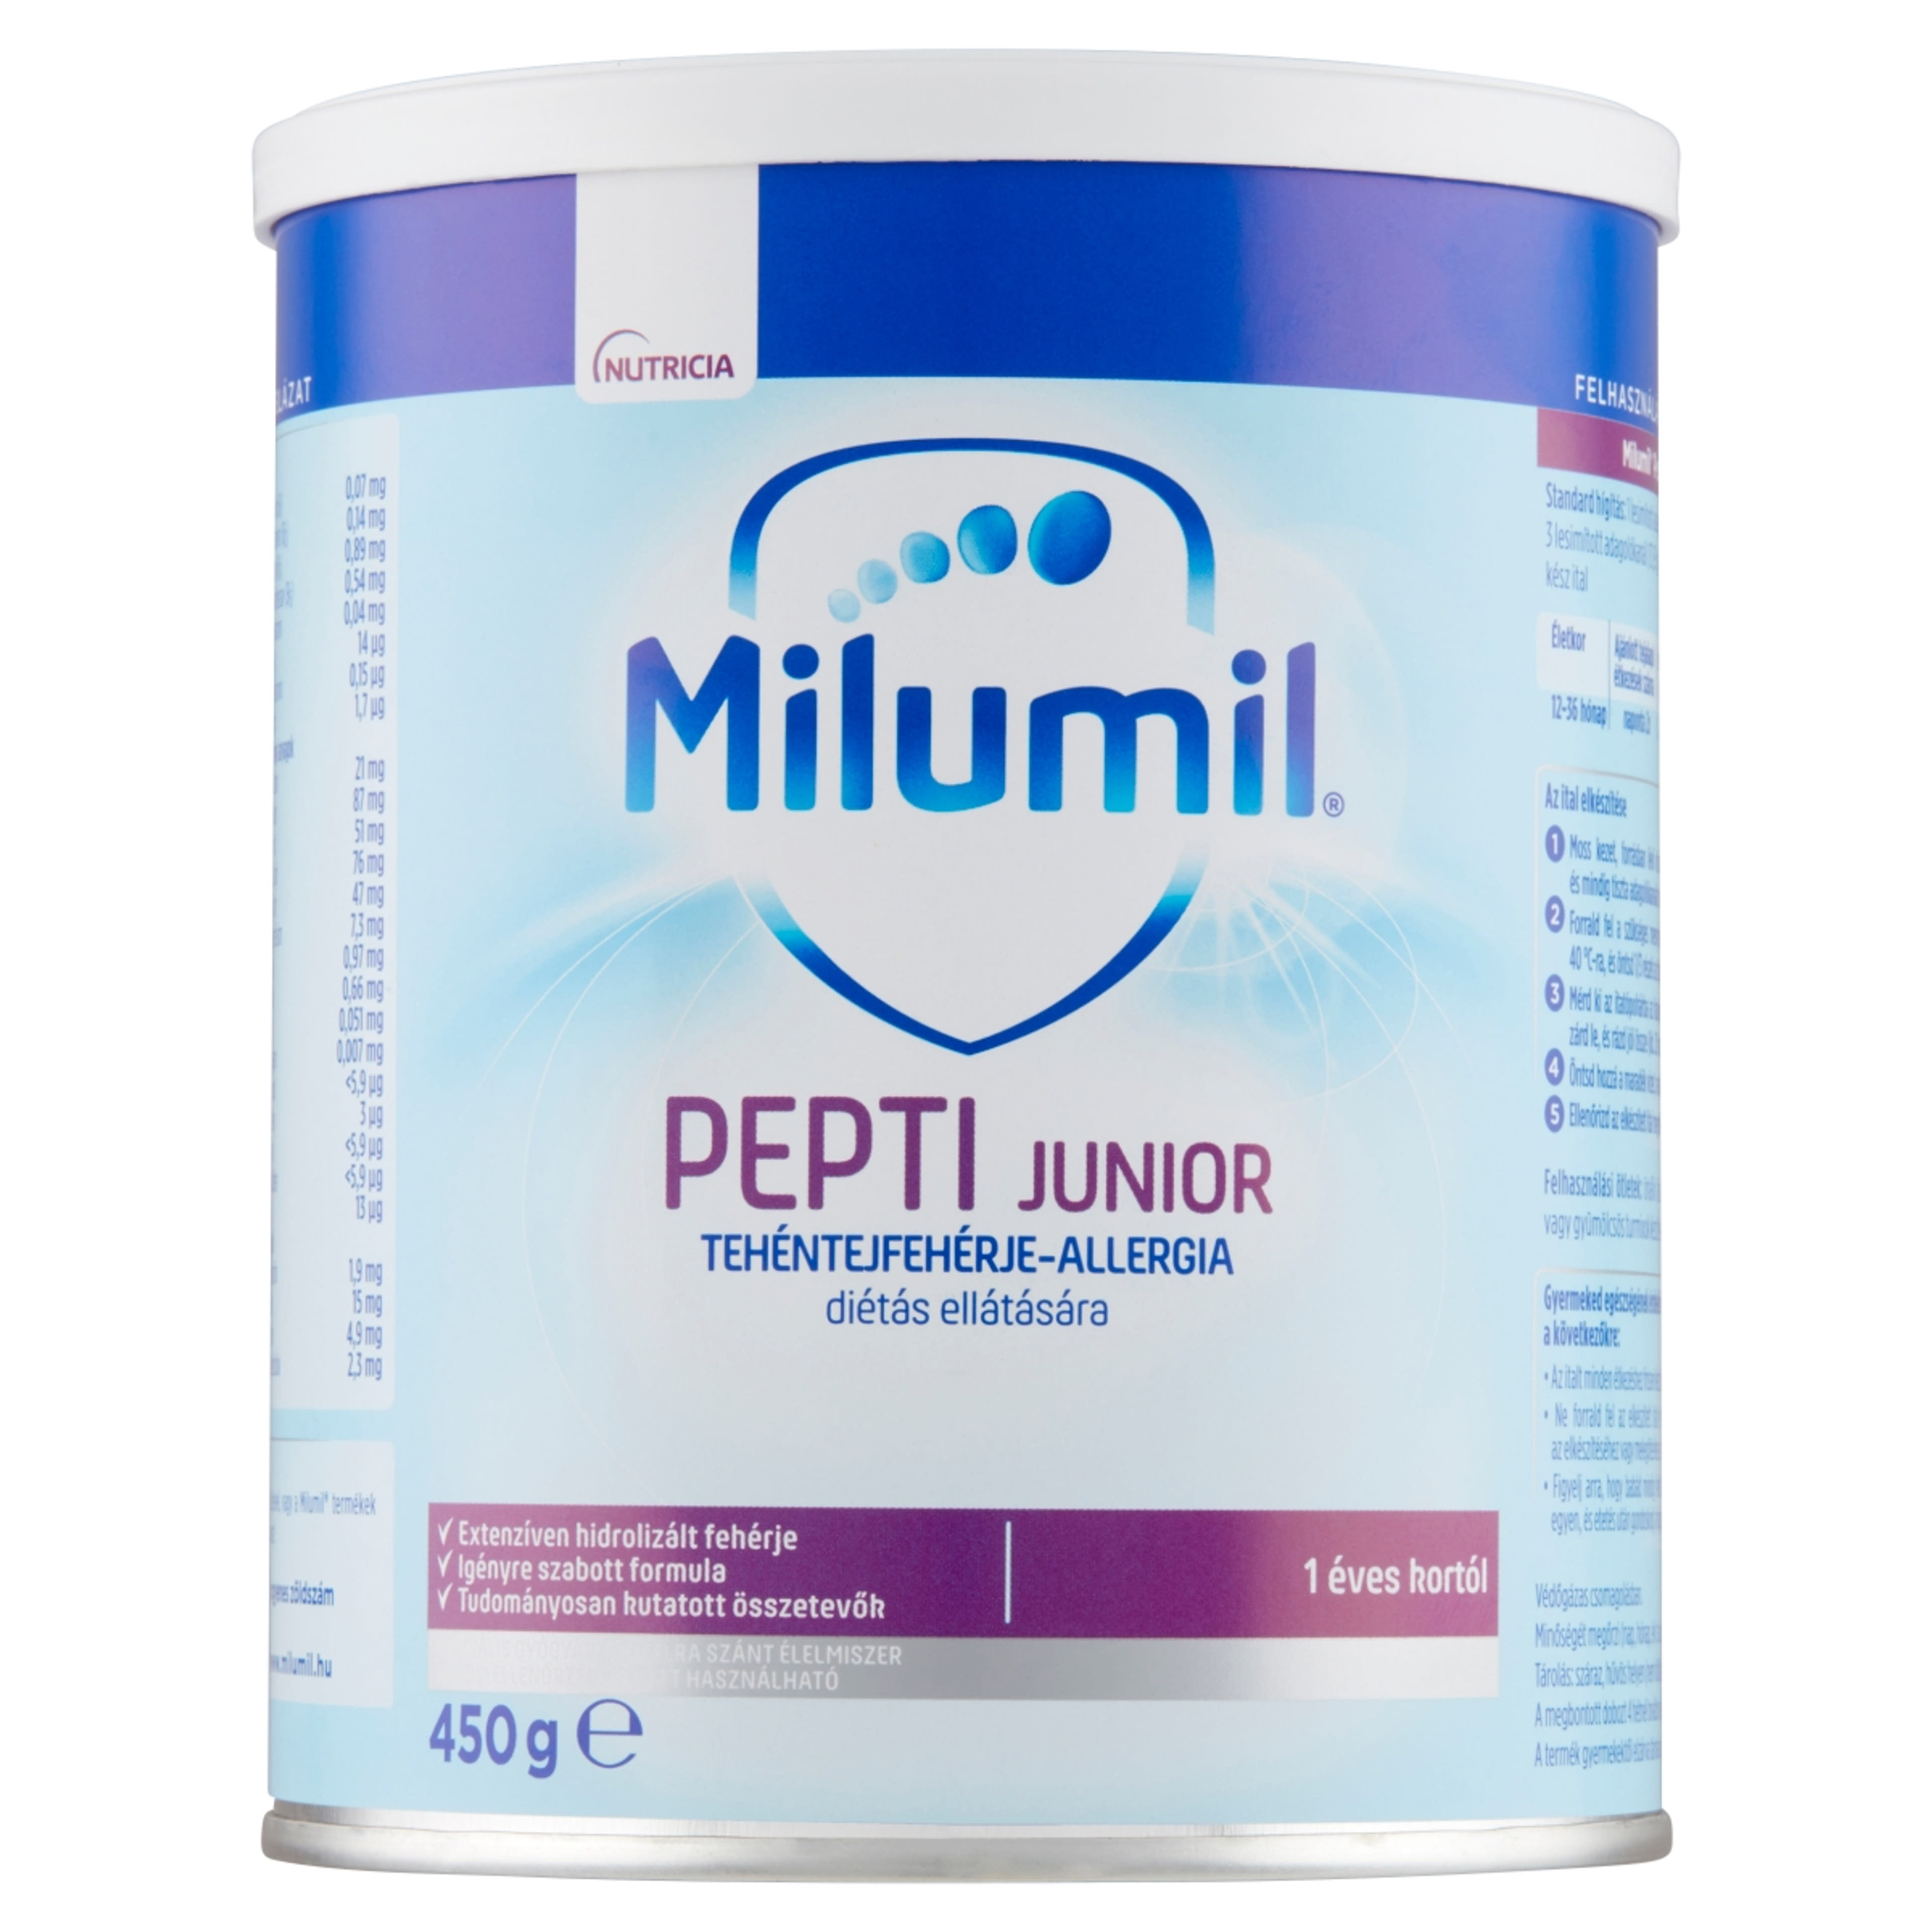 Milumil Pepti Junior speciális gyógyászati célra szánt élelmiszer 1 éves kortól - 450 g-1